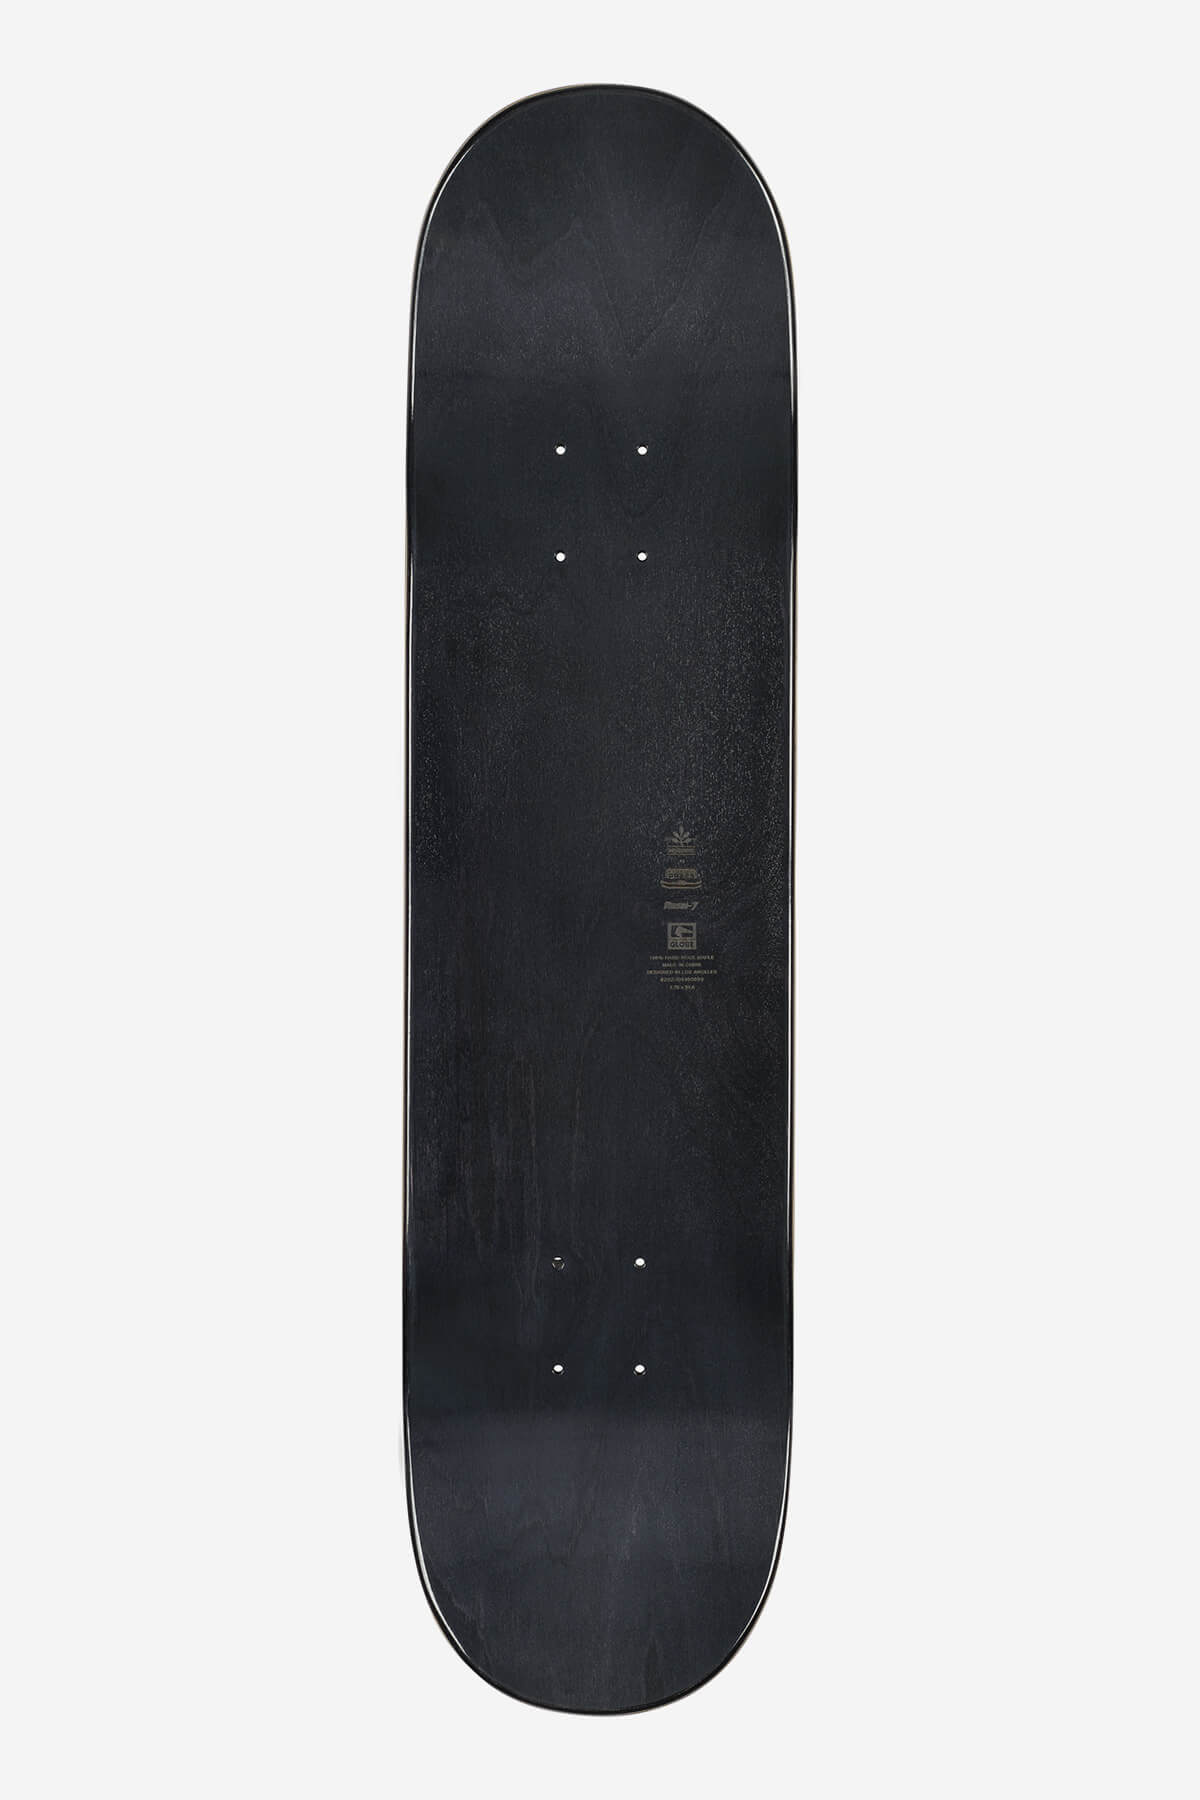 g1 lineform noir 7.75" skateboard deck